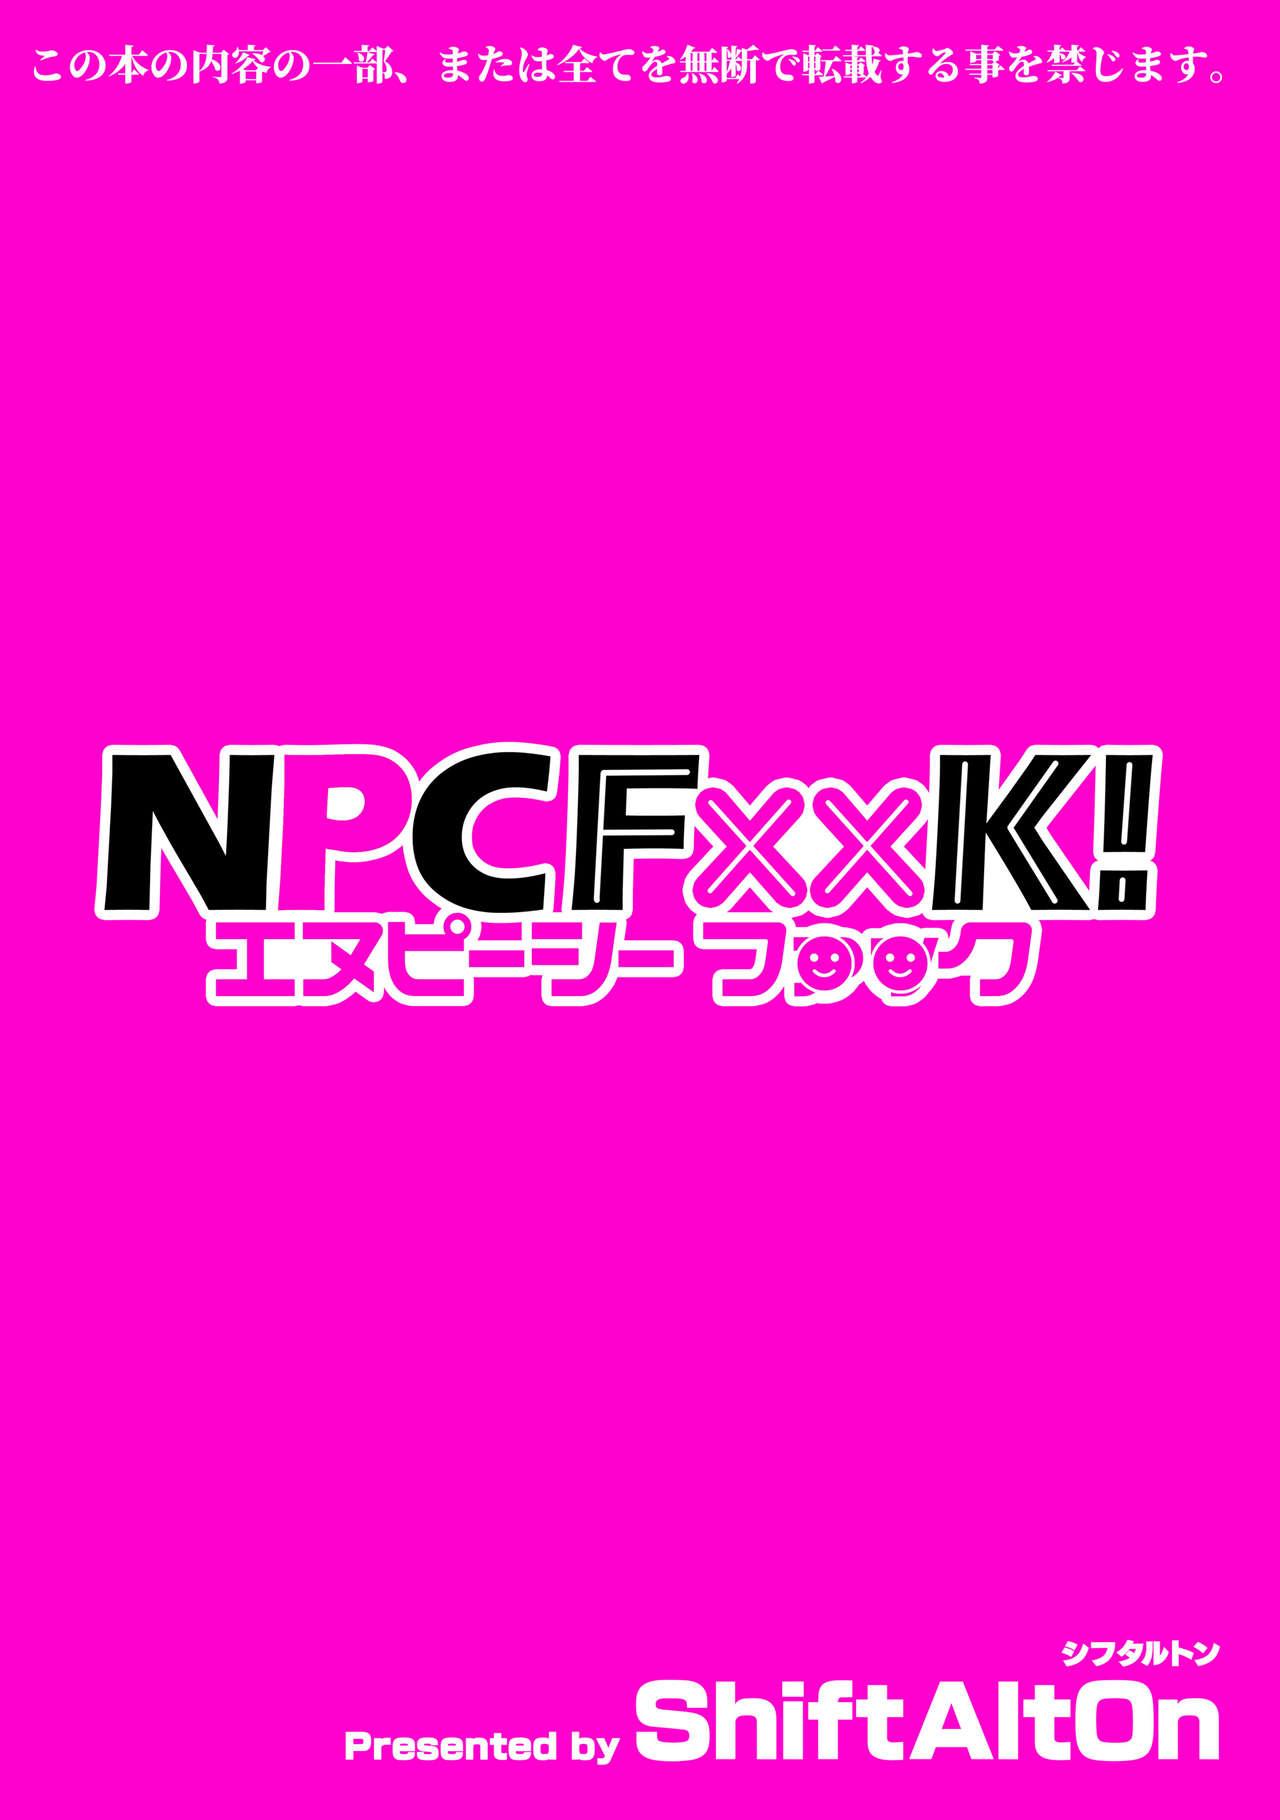 NPCFxxK! 24